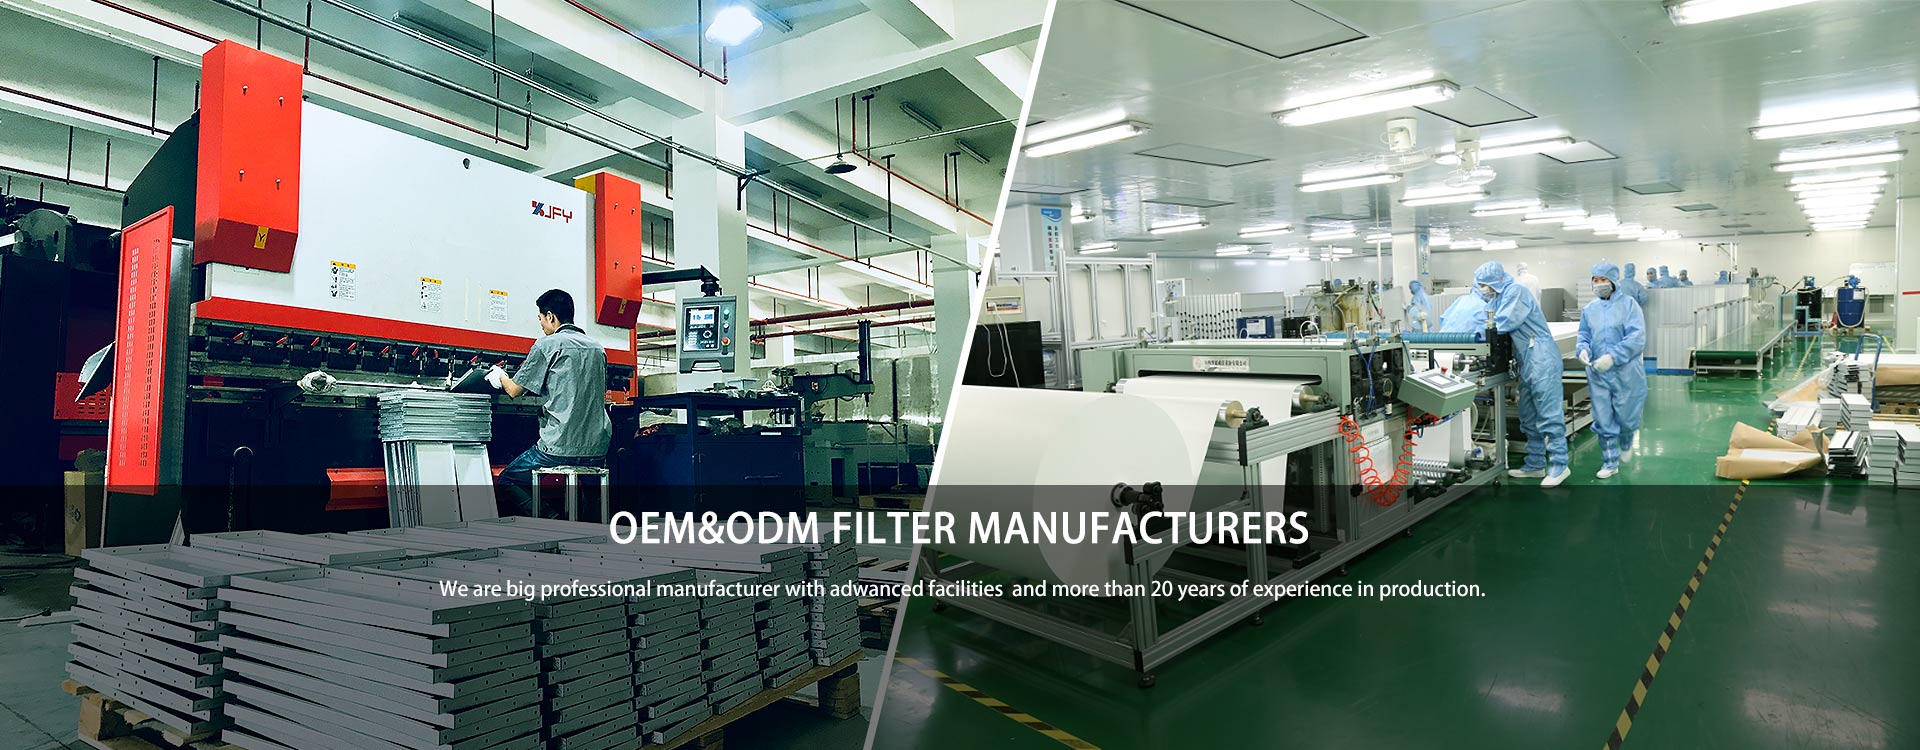 OEM&ODM filter manufacturers